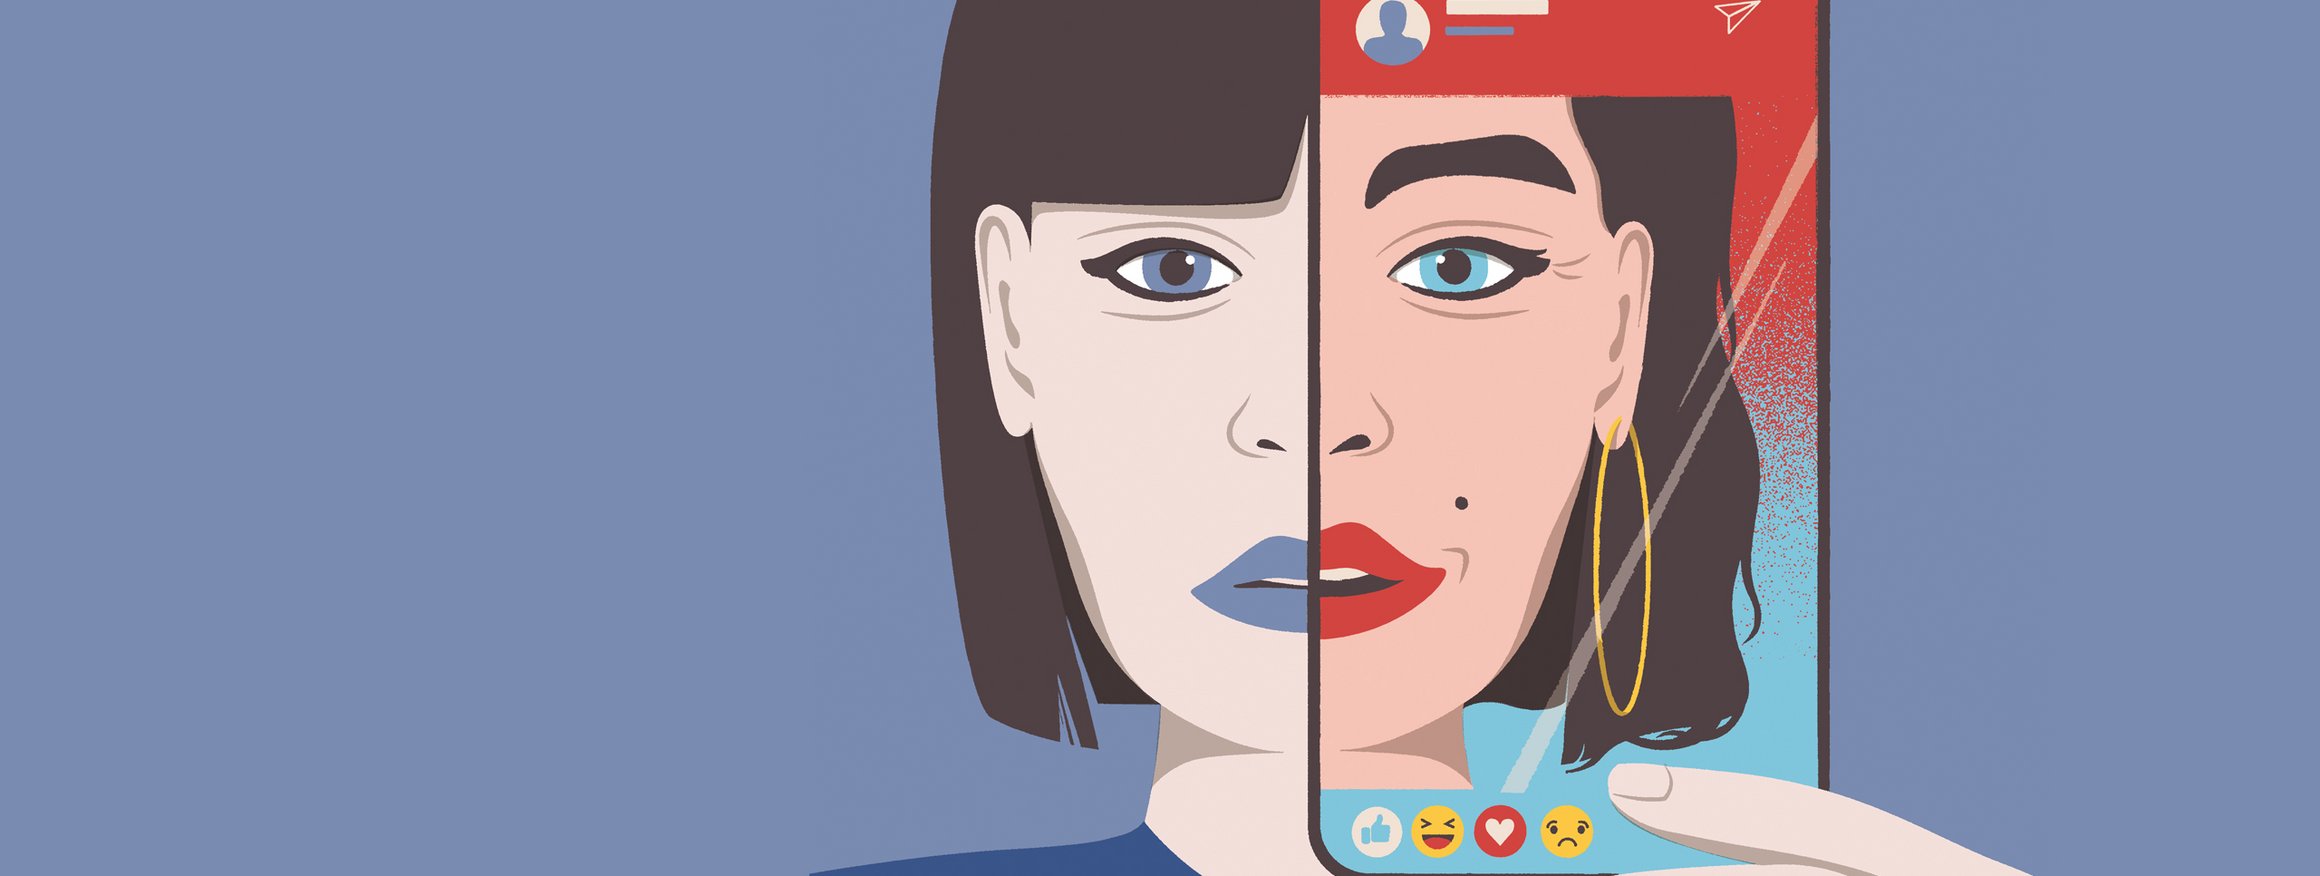 Die Illustration zeigt eine junge Frau, die ihr Smartphone vor das Gesicht hält, während man auf dem Display ihr verschönertes, künstliches Gesicht sieht